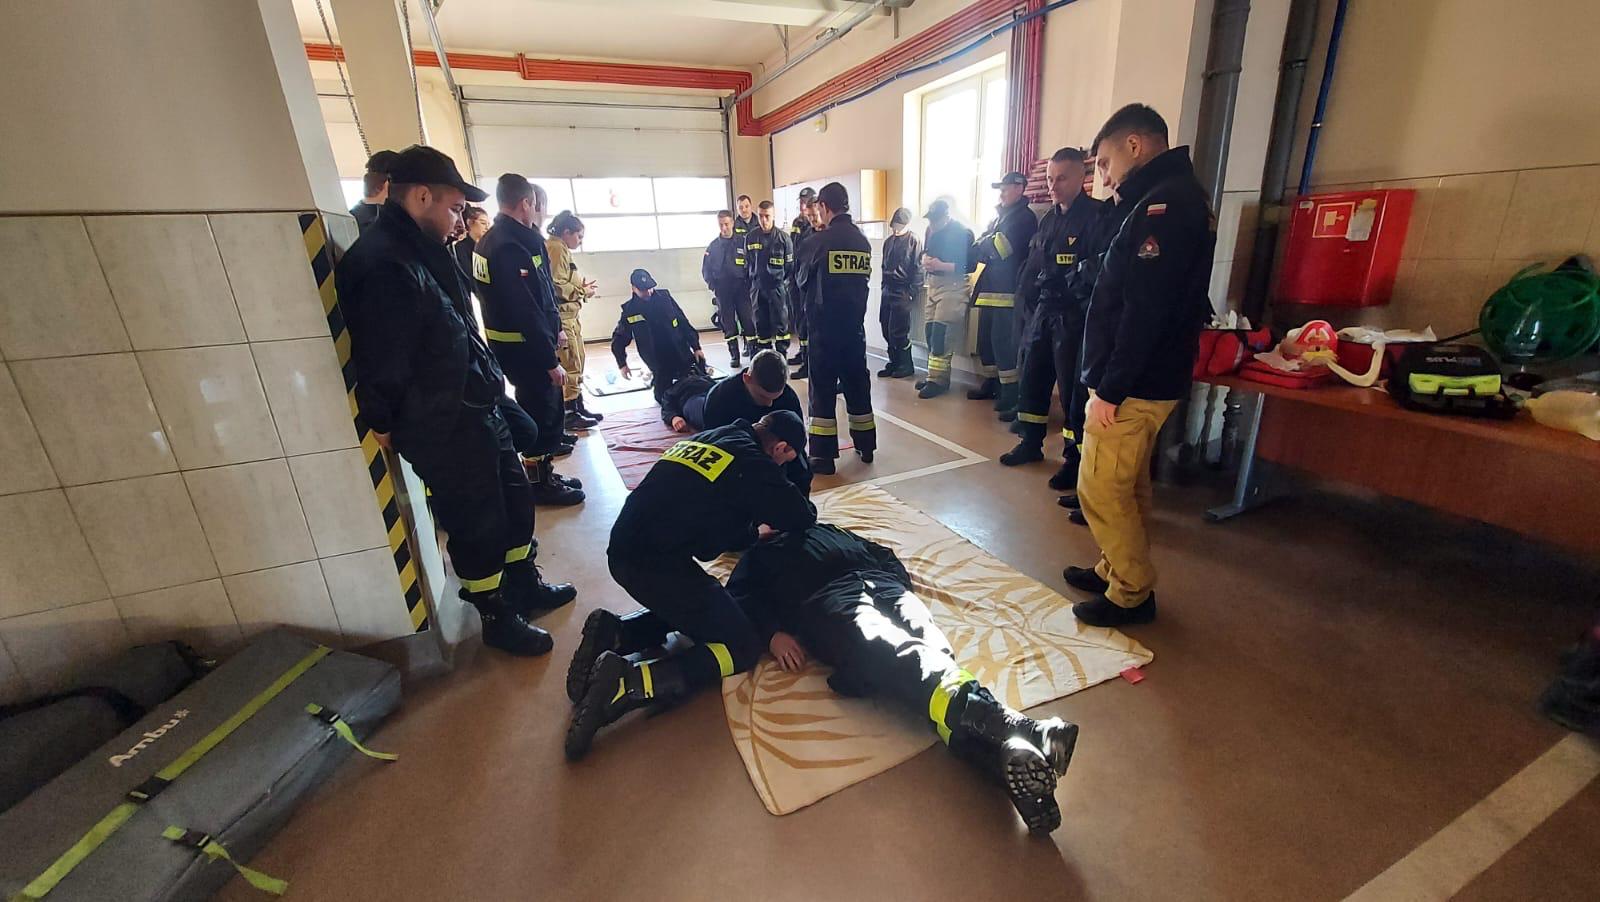 Strażacy uczą się udzielania pierwszej pomocy przedmedycznej. Dwie osoby leży na podłodze a cztery kolejne ćwiczy udzielanie pomocy. Pozostali strażacy obserwują ćwiczenia.